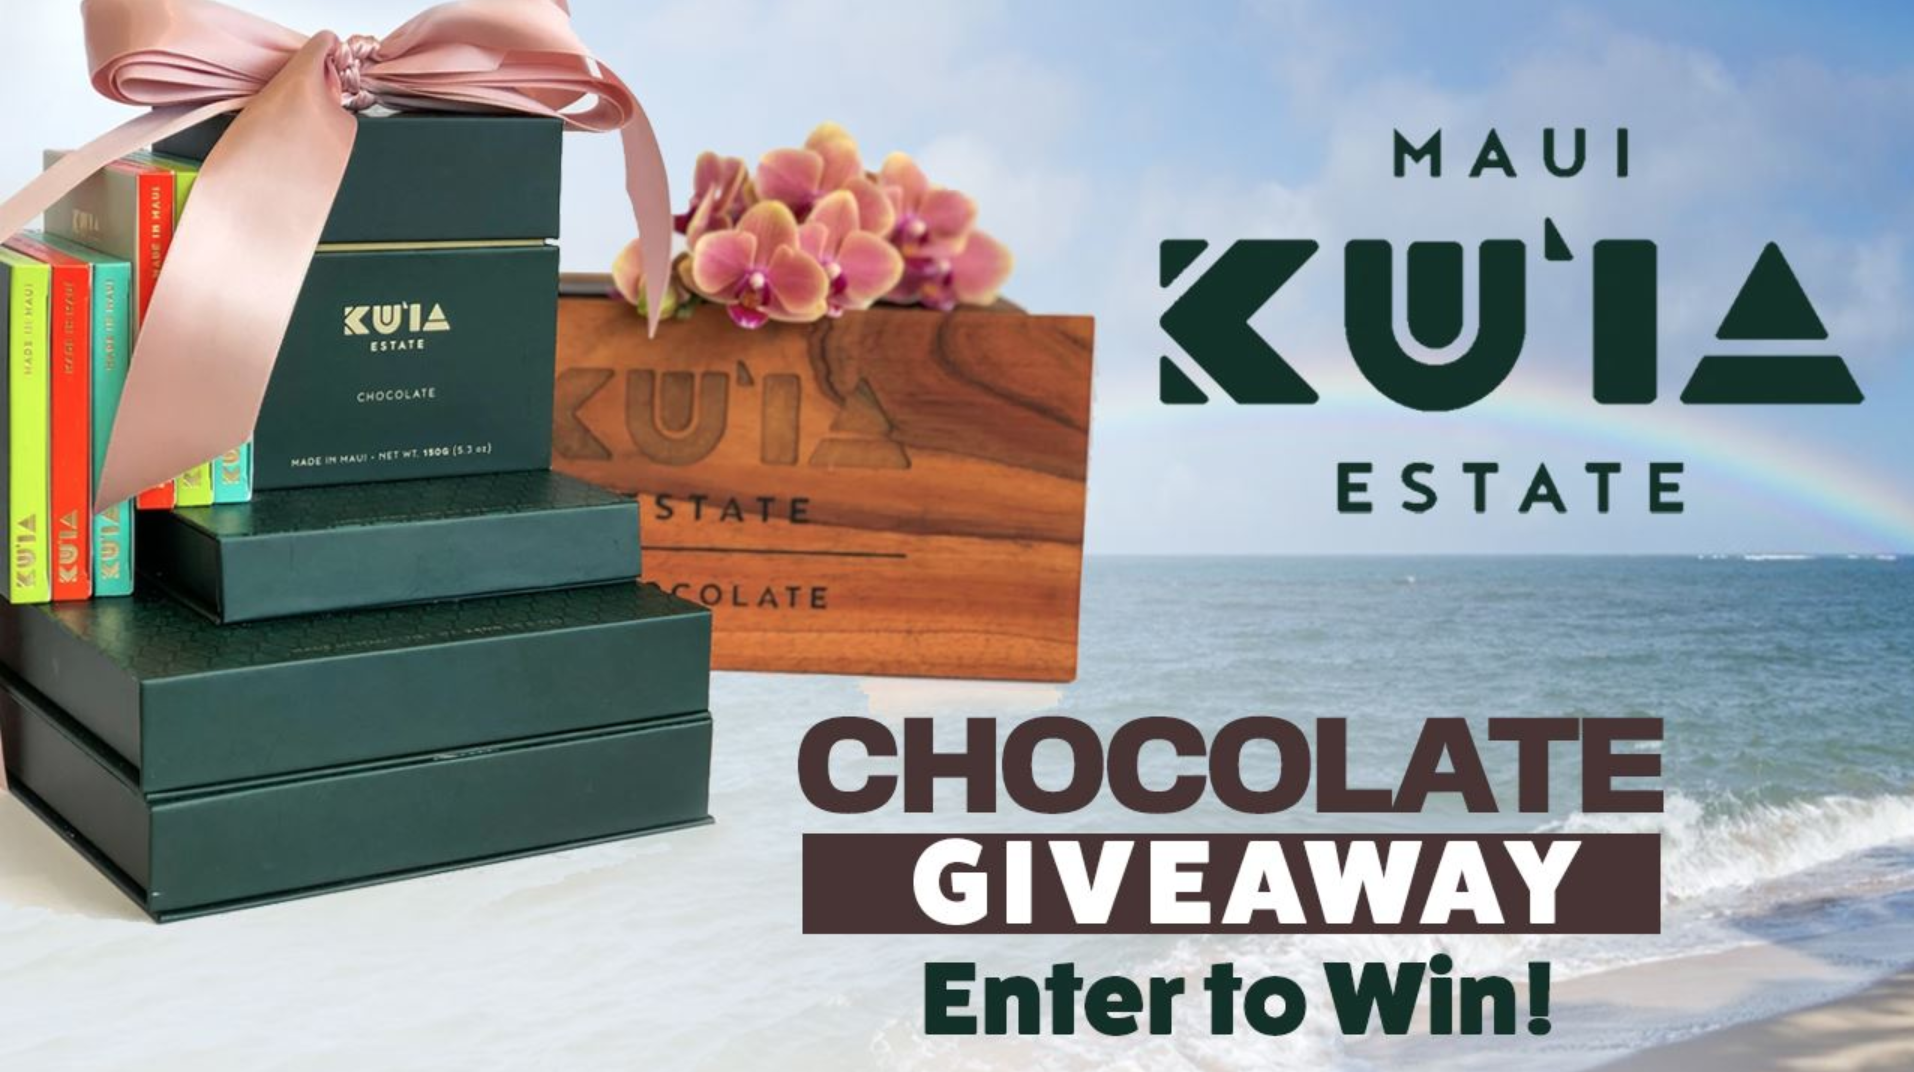 Mother's Day Giveaway-Maui Kuʻia Estate Chocolate